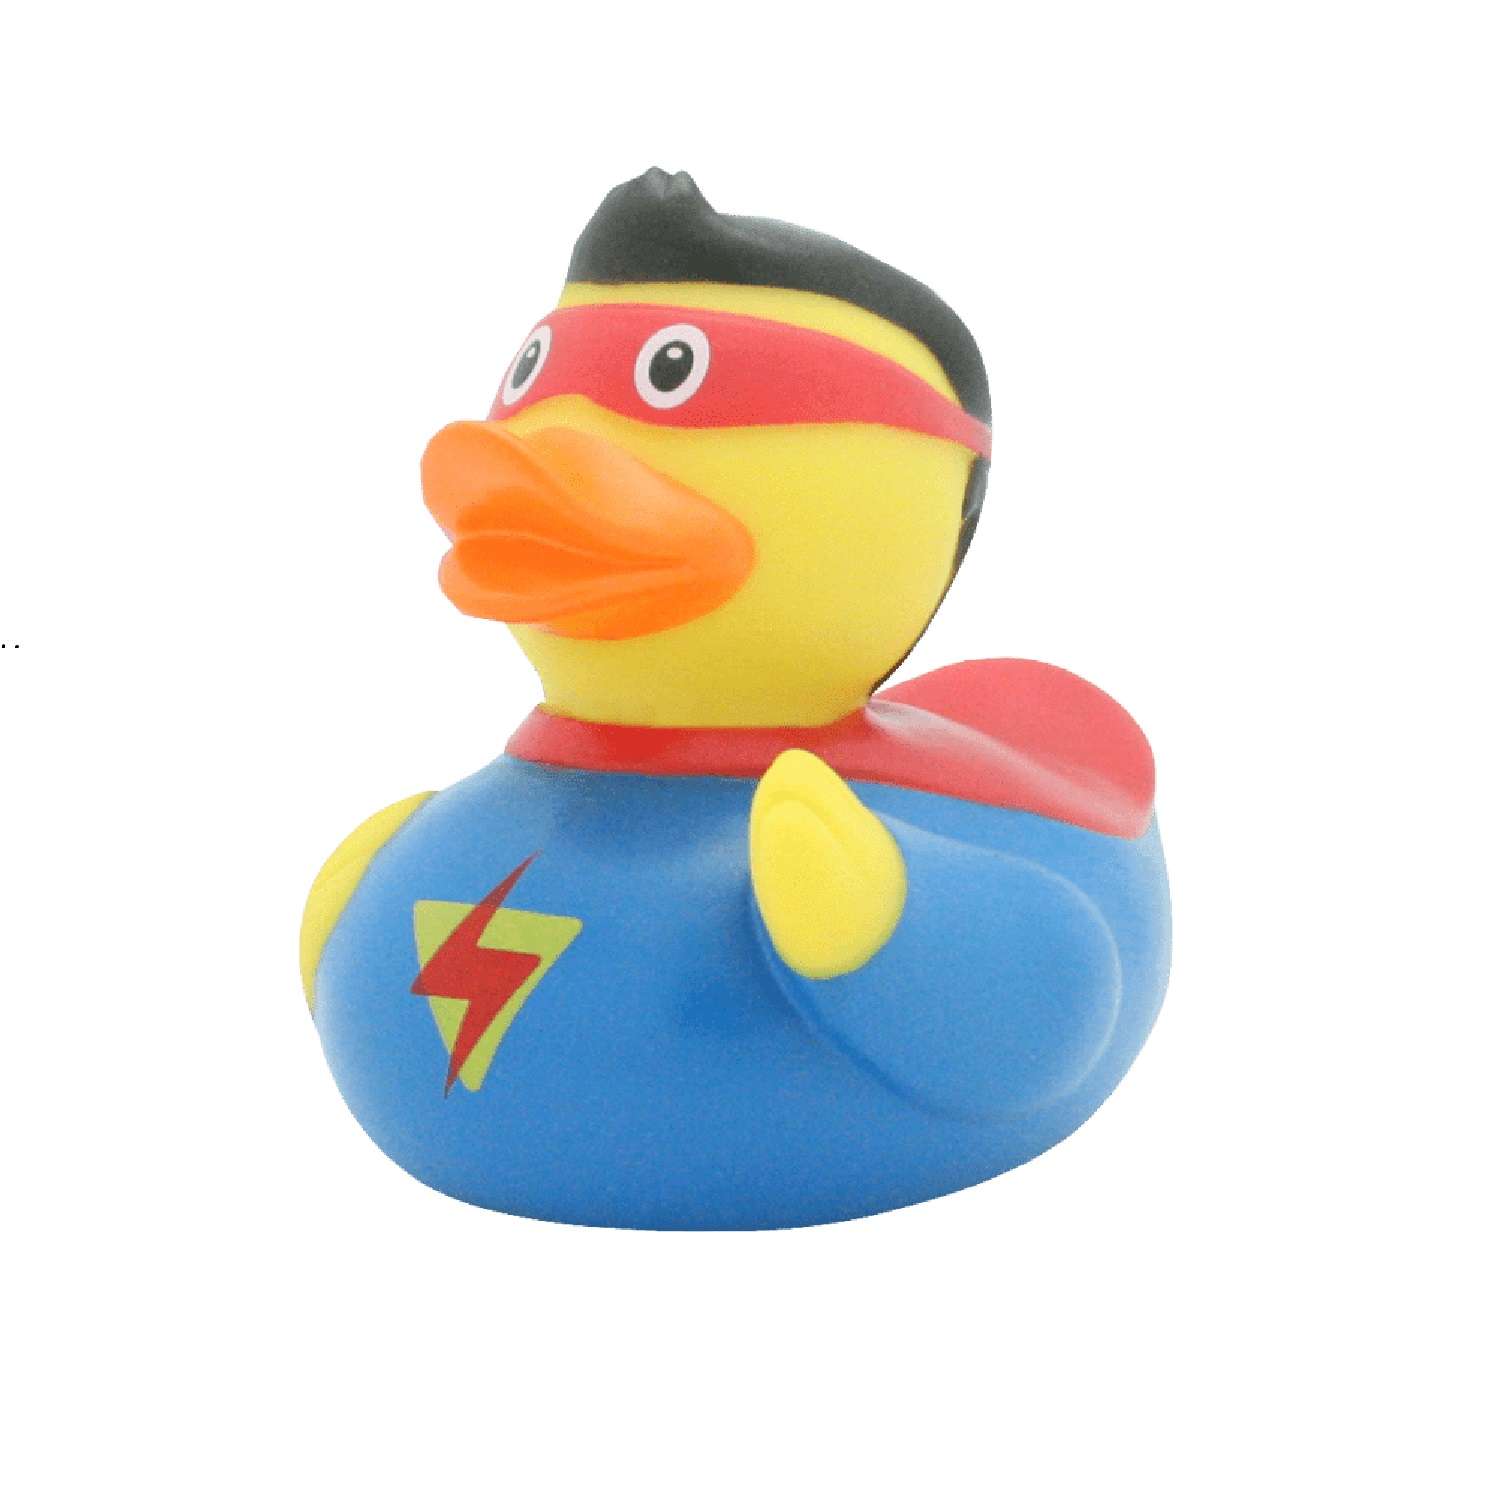 Игрушка Funny ducks для ванной Супер он уточка 1809 - фото 4